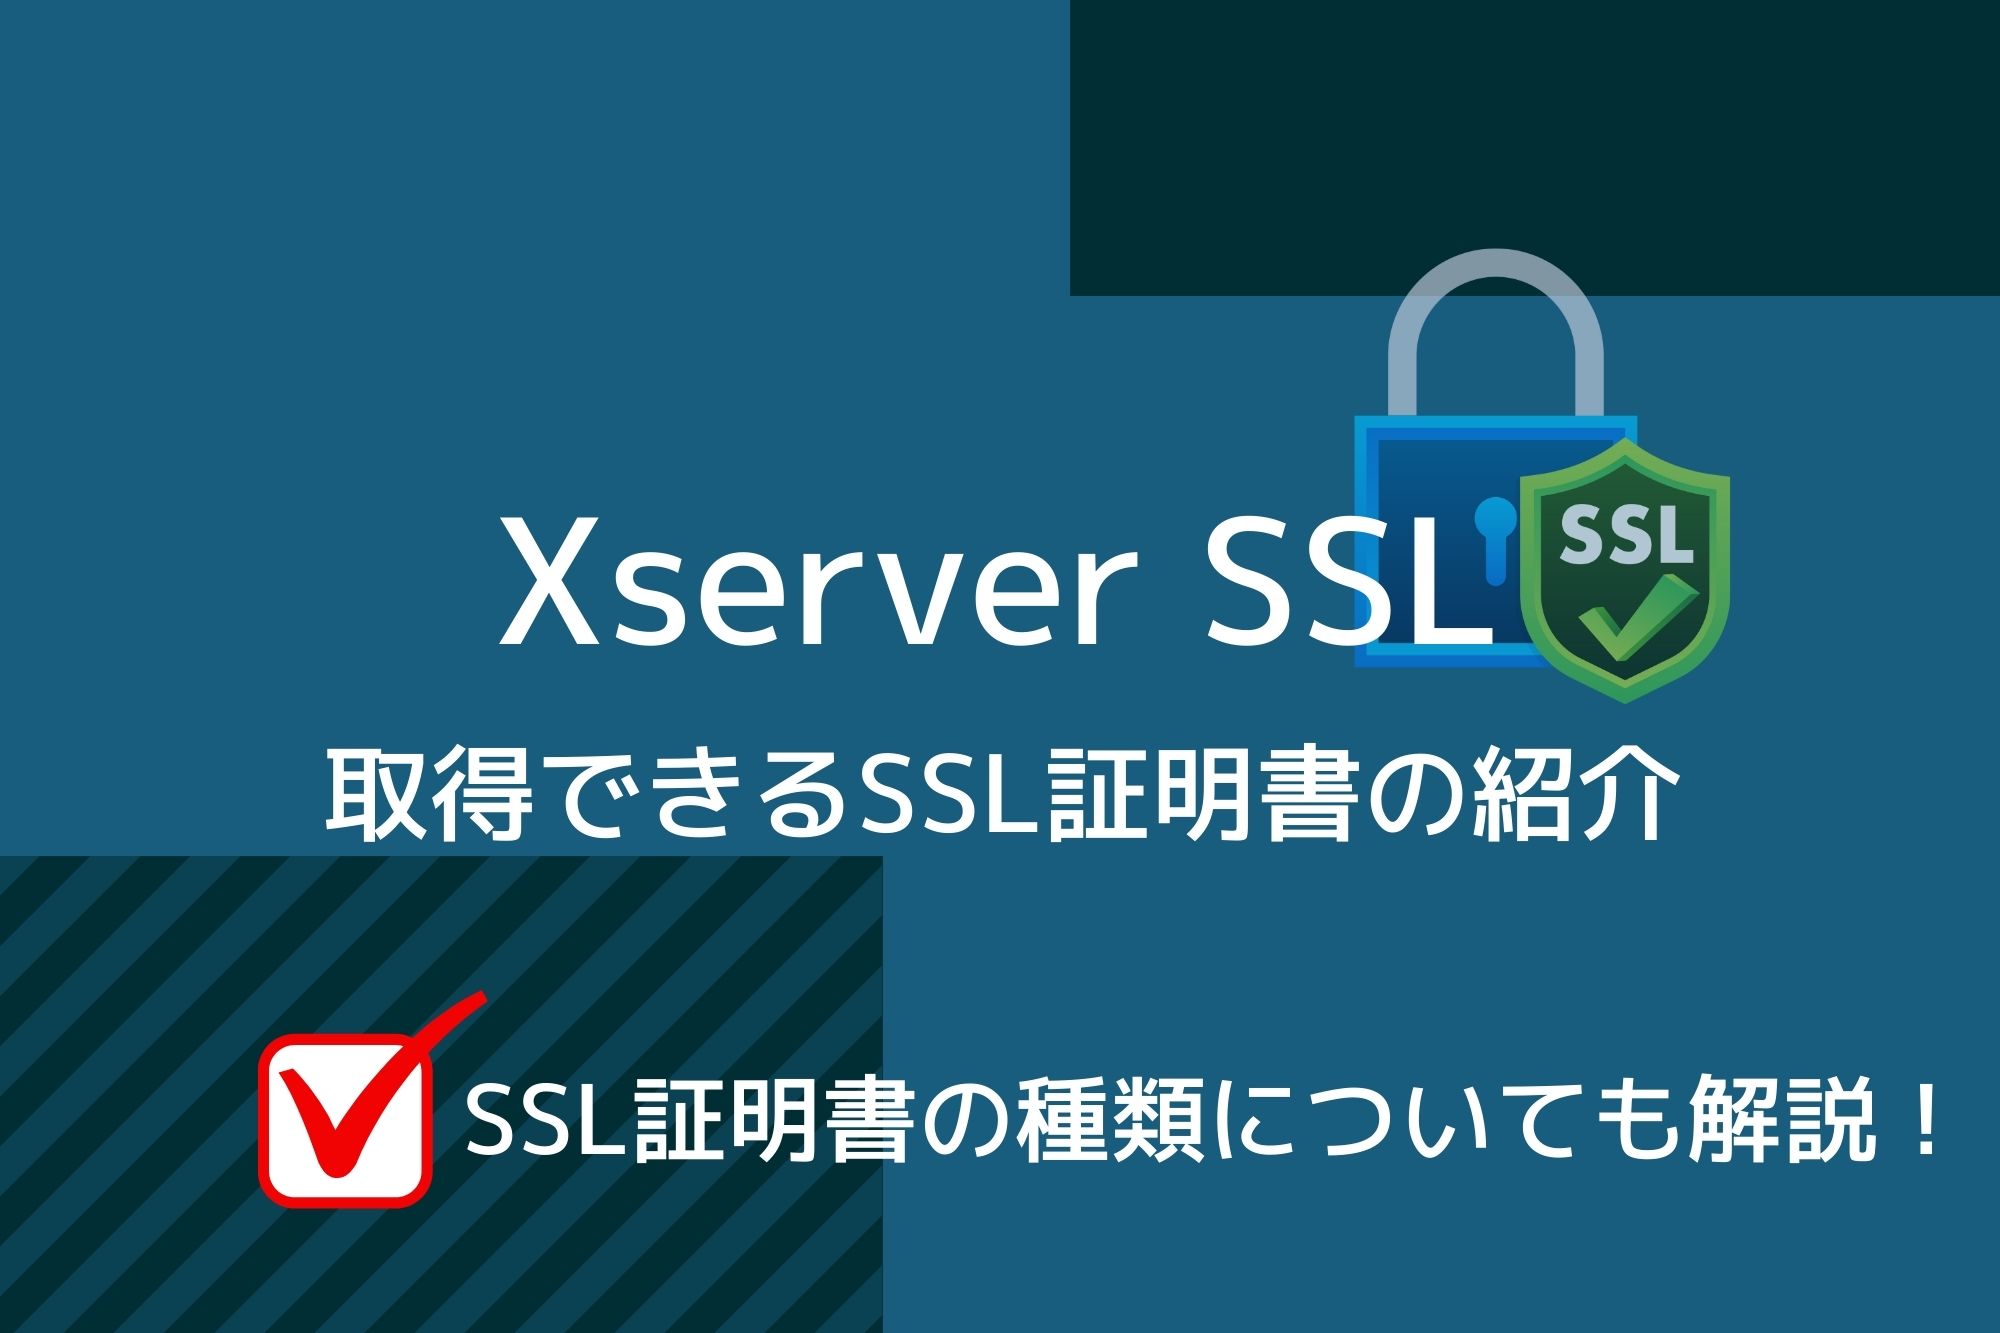 Xserver SSLで購入できるSSL証明書を紹介！証明書の種類についても解説！